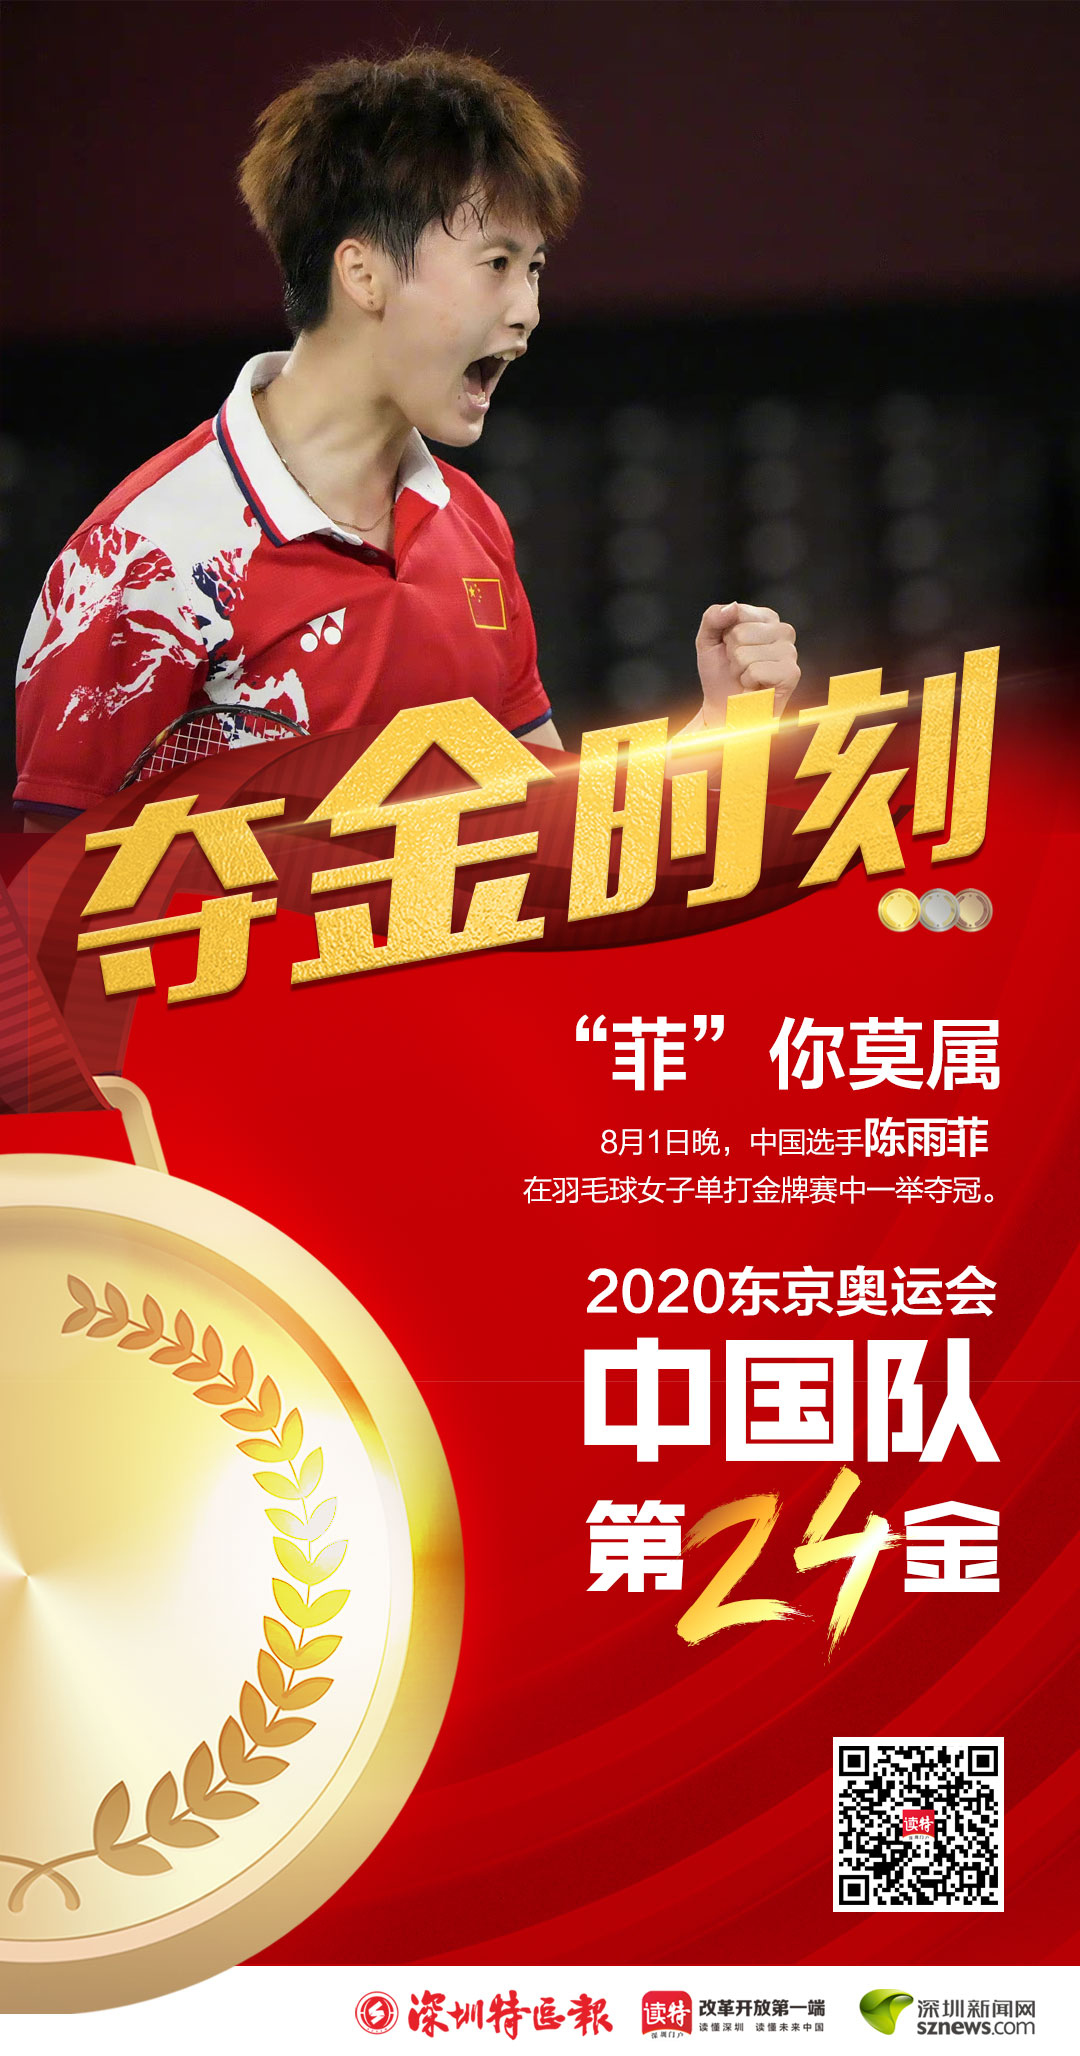 第24金!陈雨菲获得东京奥运会羽毛球女子单打金牌